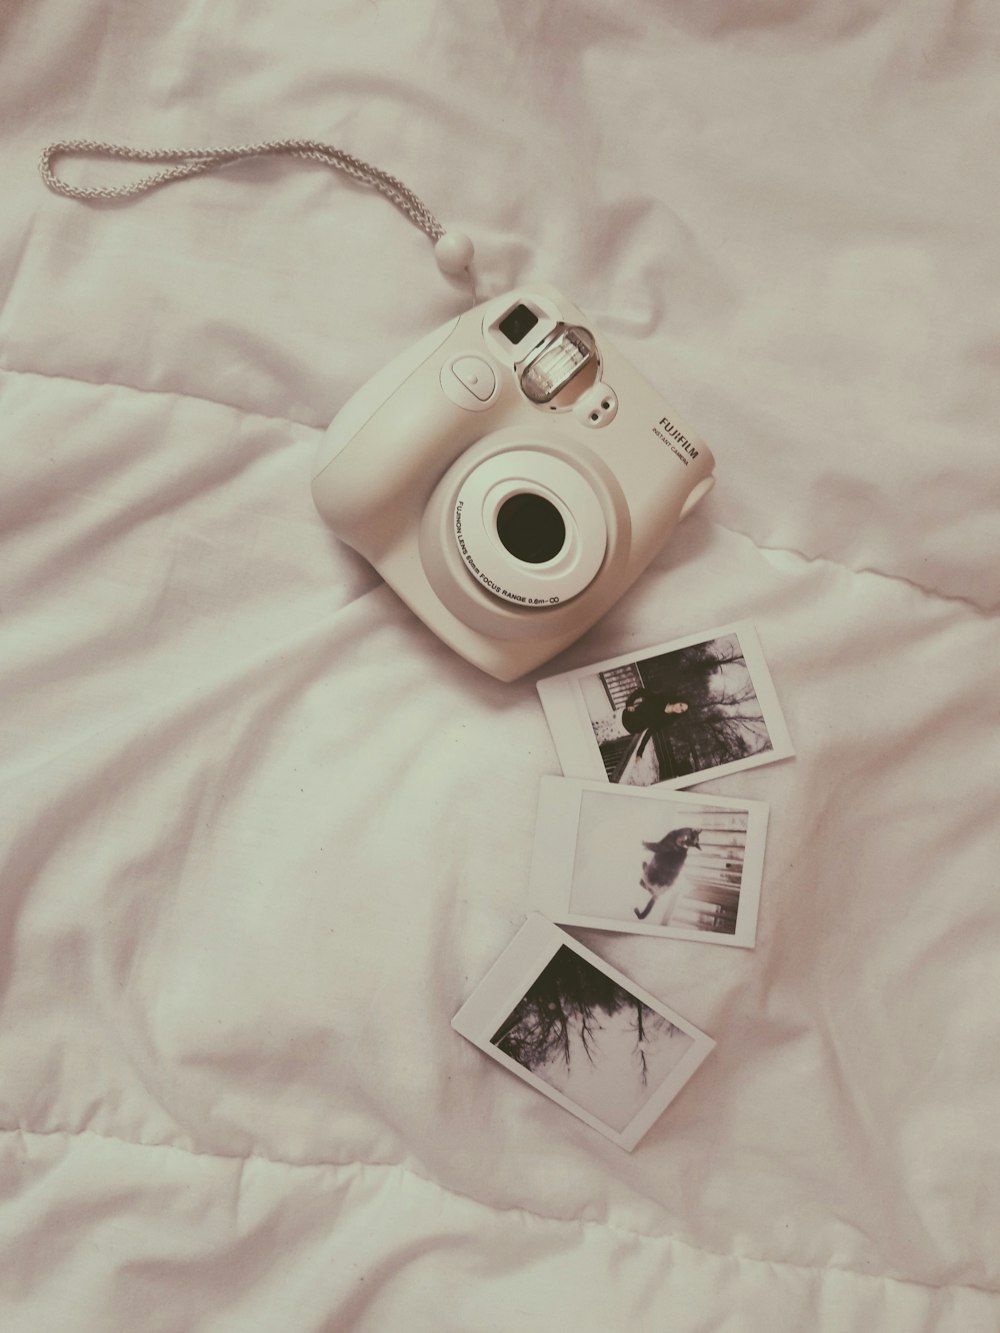 weiße Fujifilm Sofortbildkamera auf weißer Bettdecke